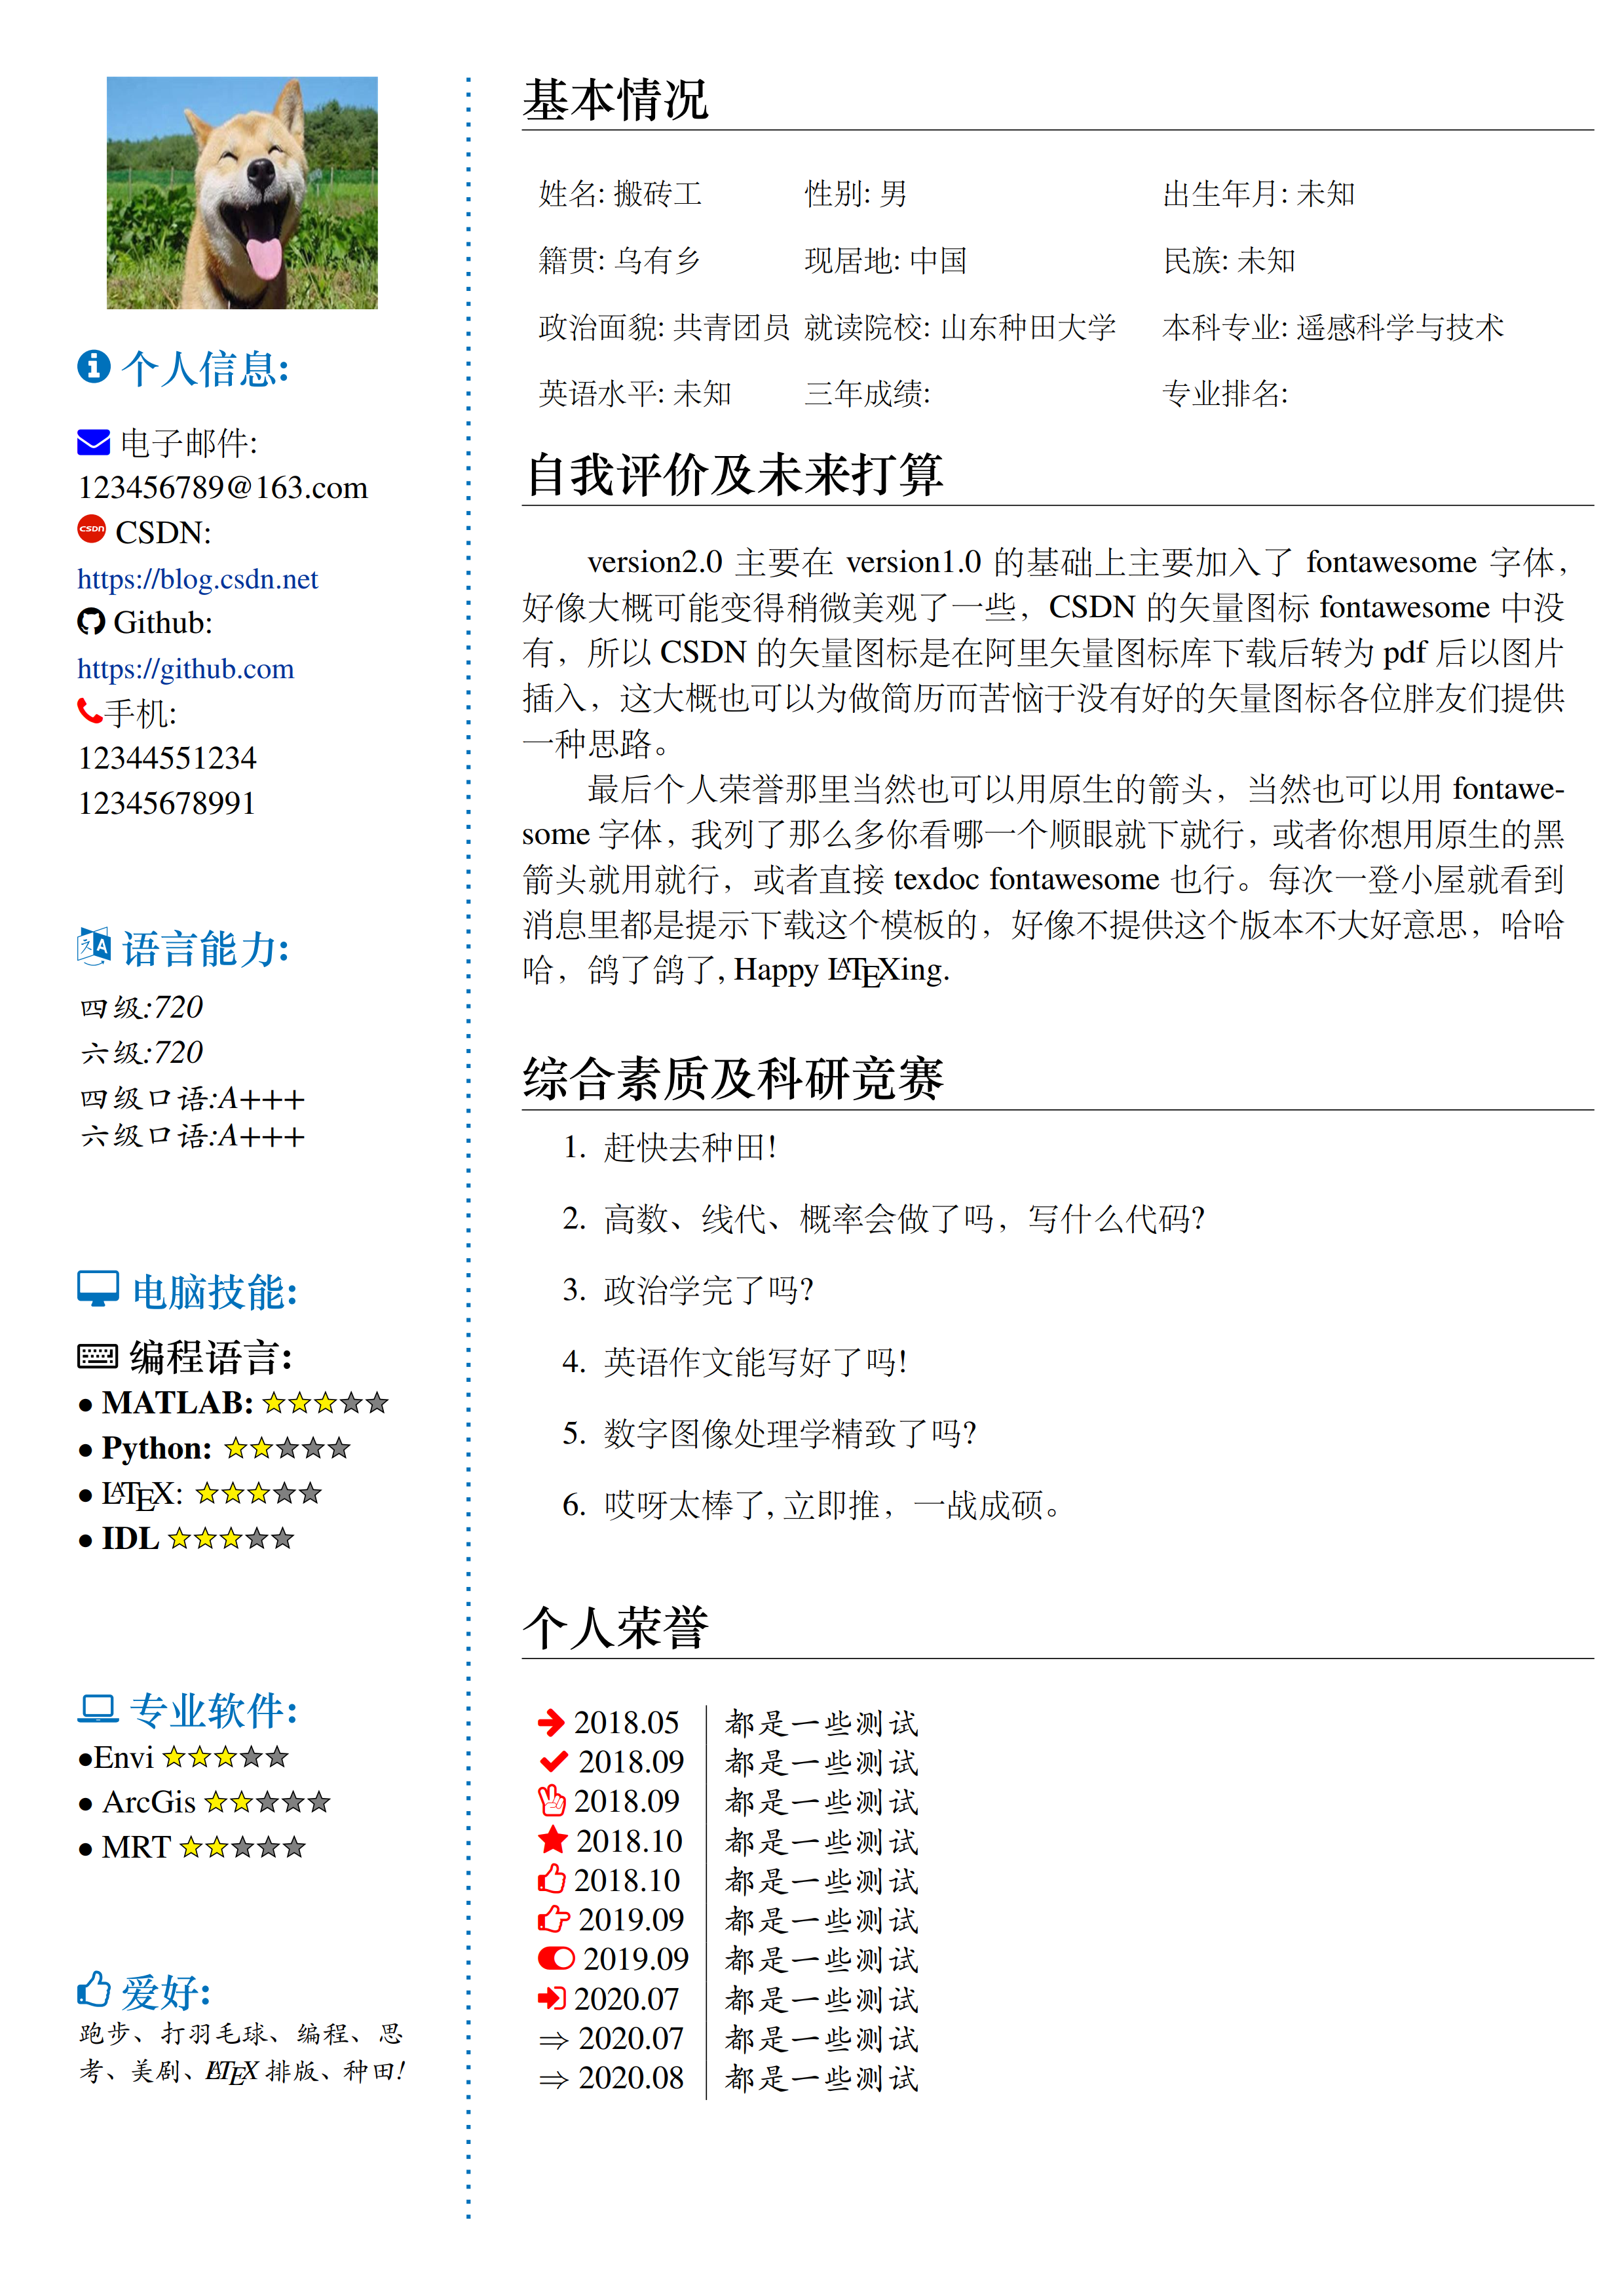 根据老的中文模板修改的简历模板 version 2.0